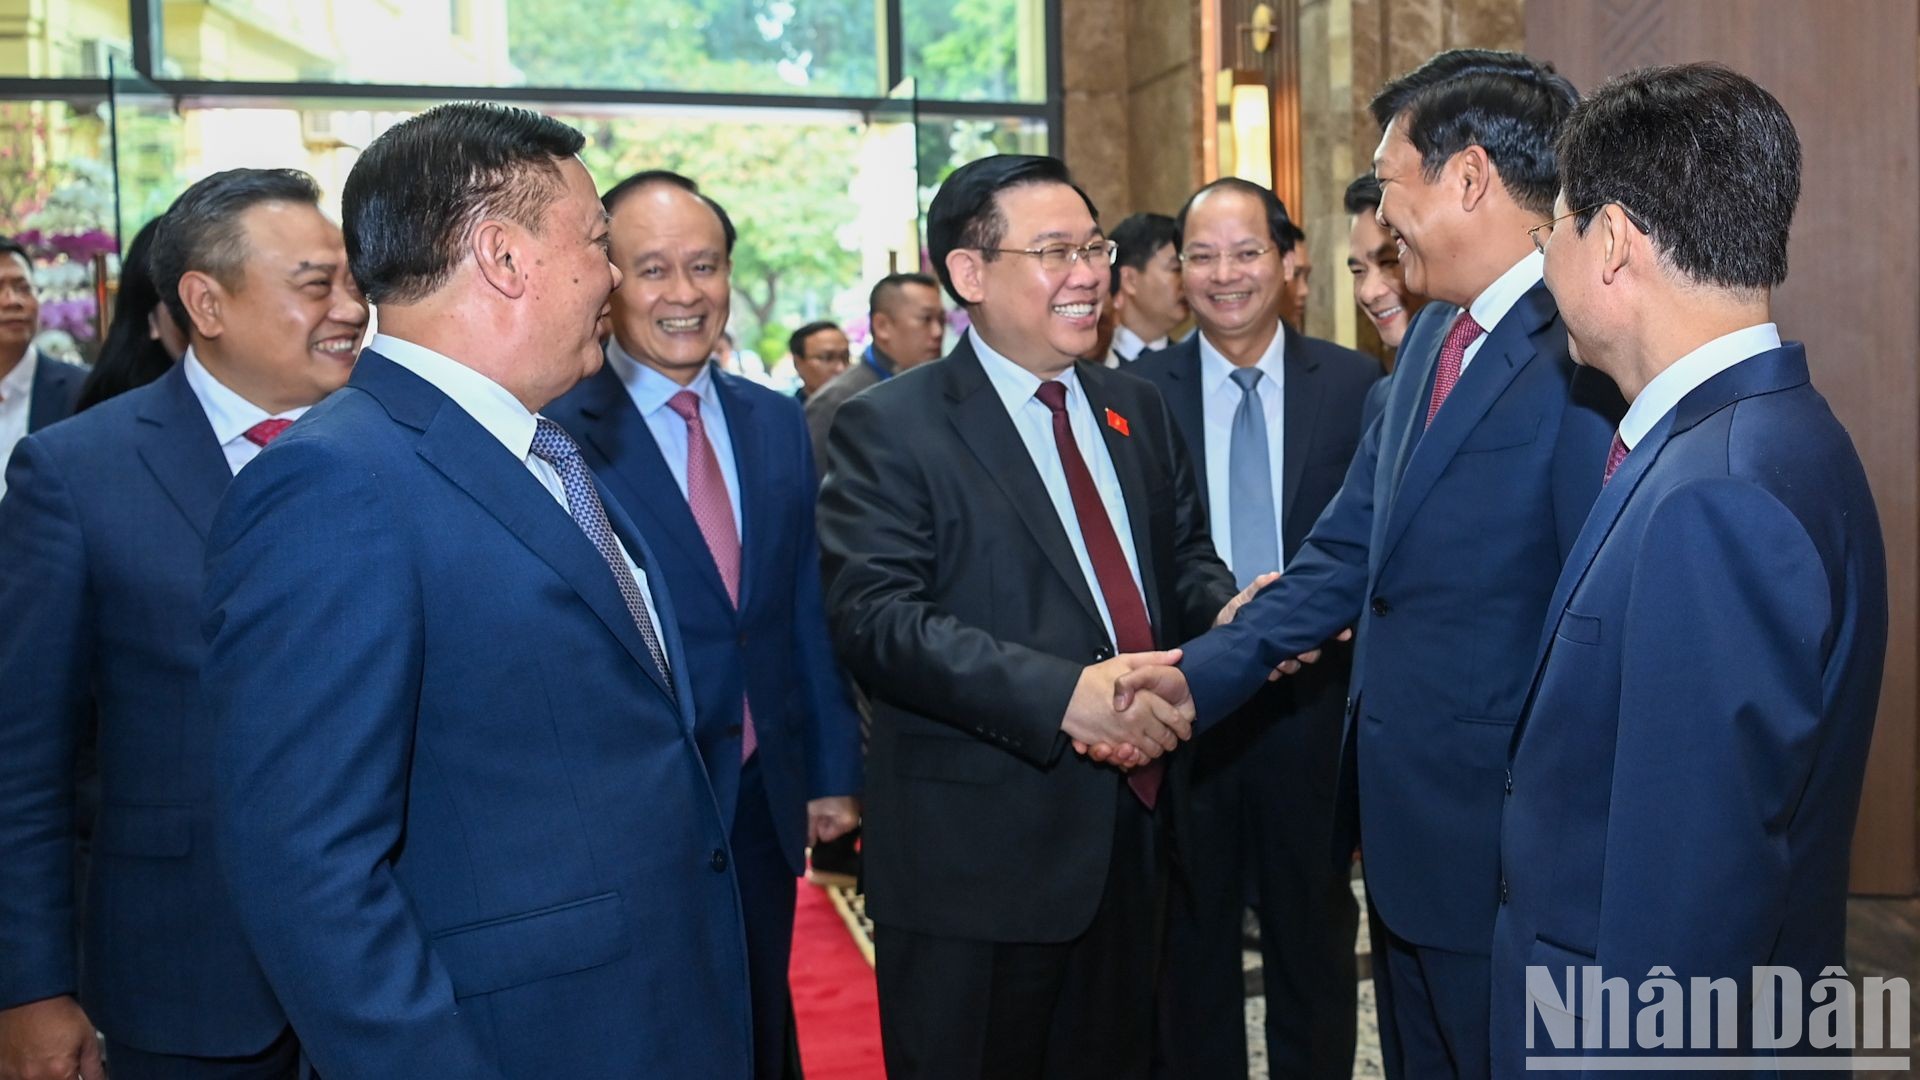 Chủ tịch Quốc hội Vương Đình Huệ với các đồng chí lãnh đạo thành phố Hà Nội.